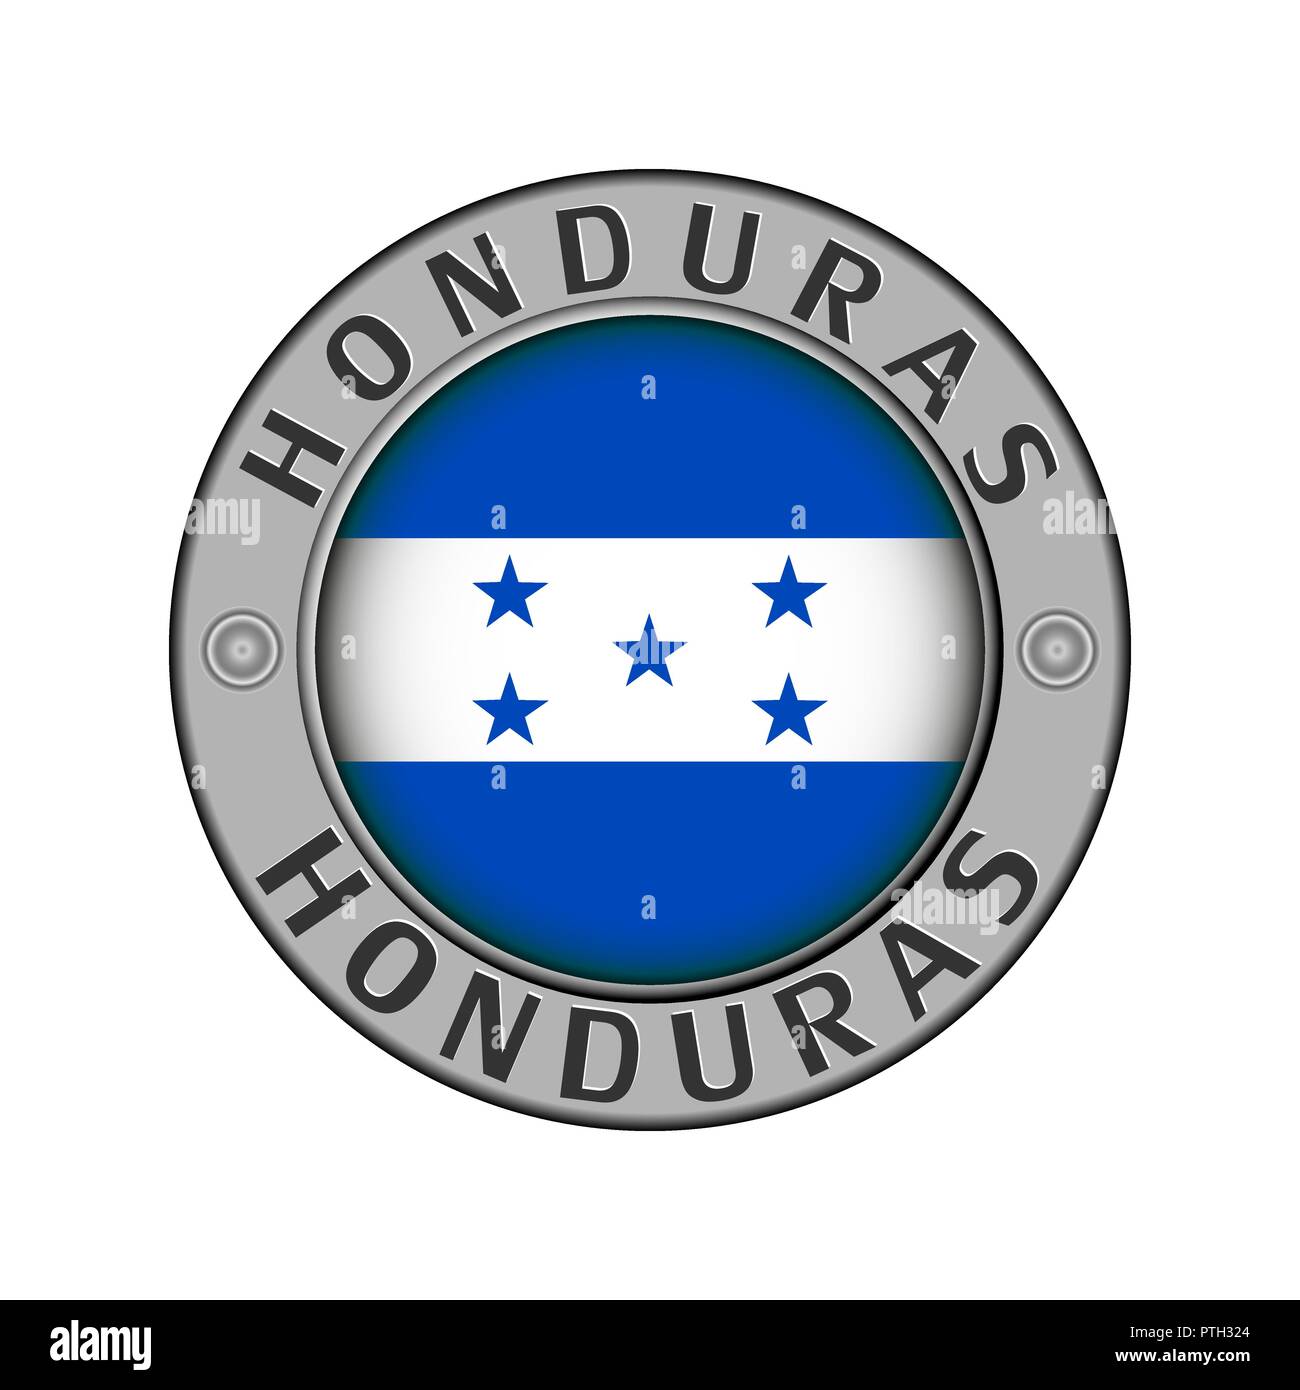 Rotondo di metallo medaglione con il nome del paese Honduras e un indicatore rotondo nel centro Illustrazione Vettoriale